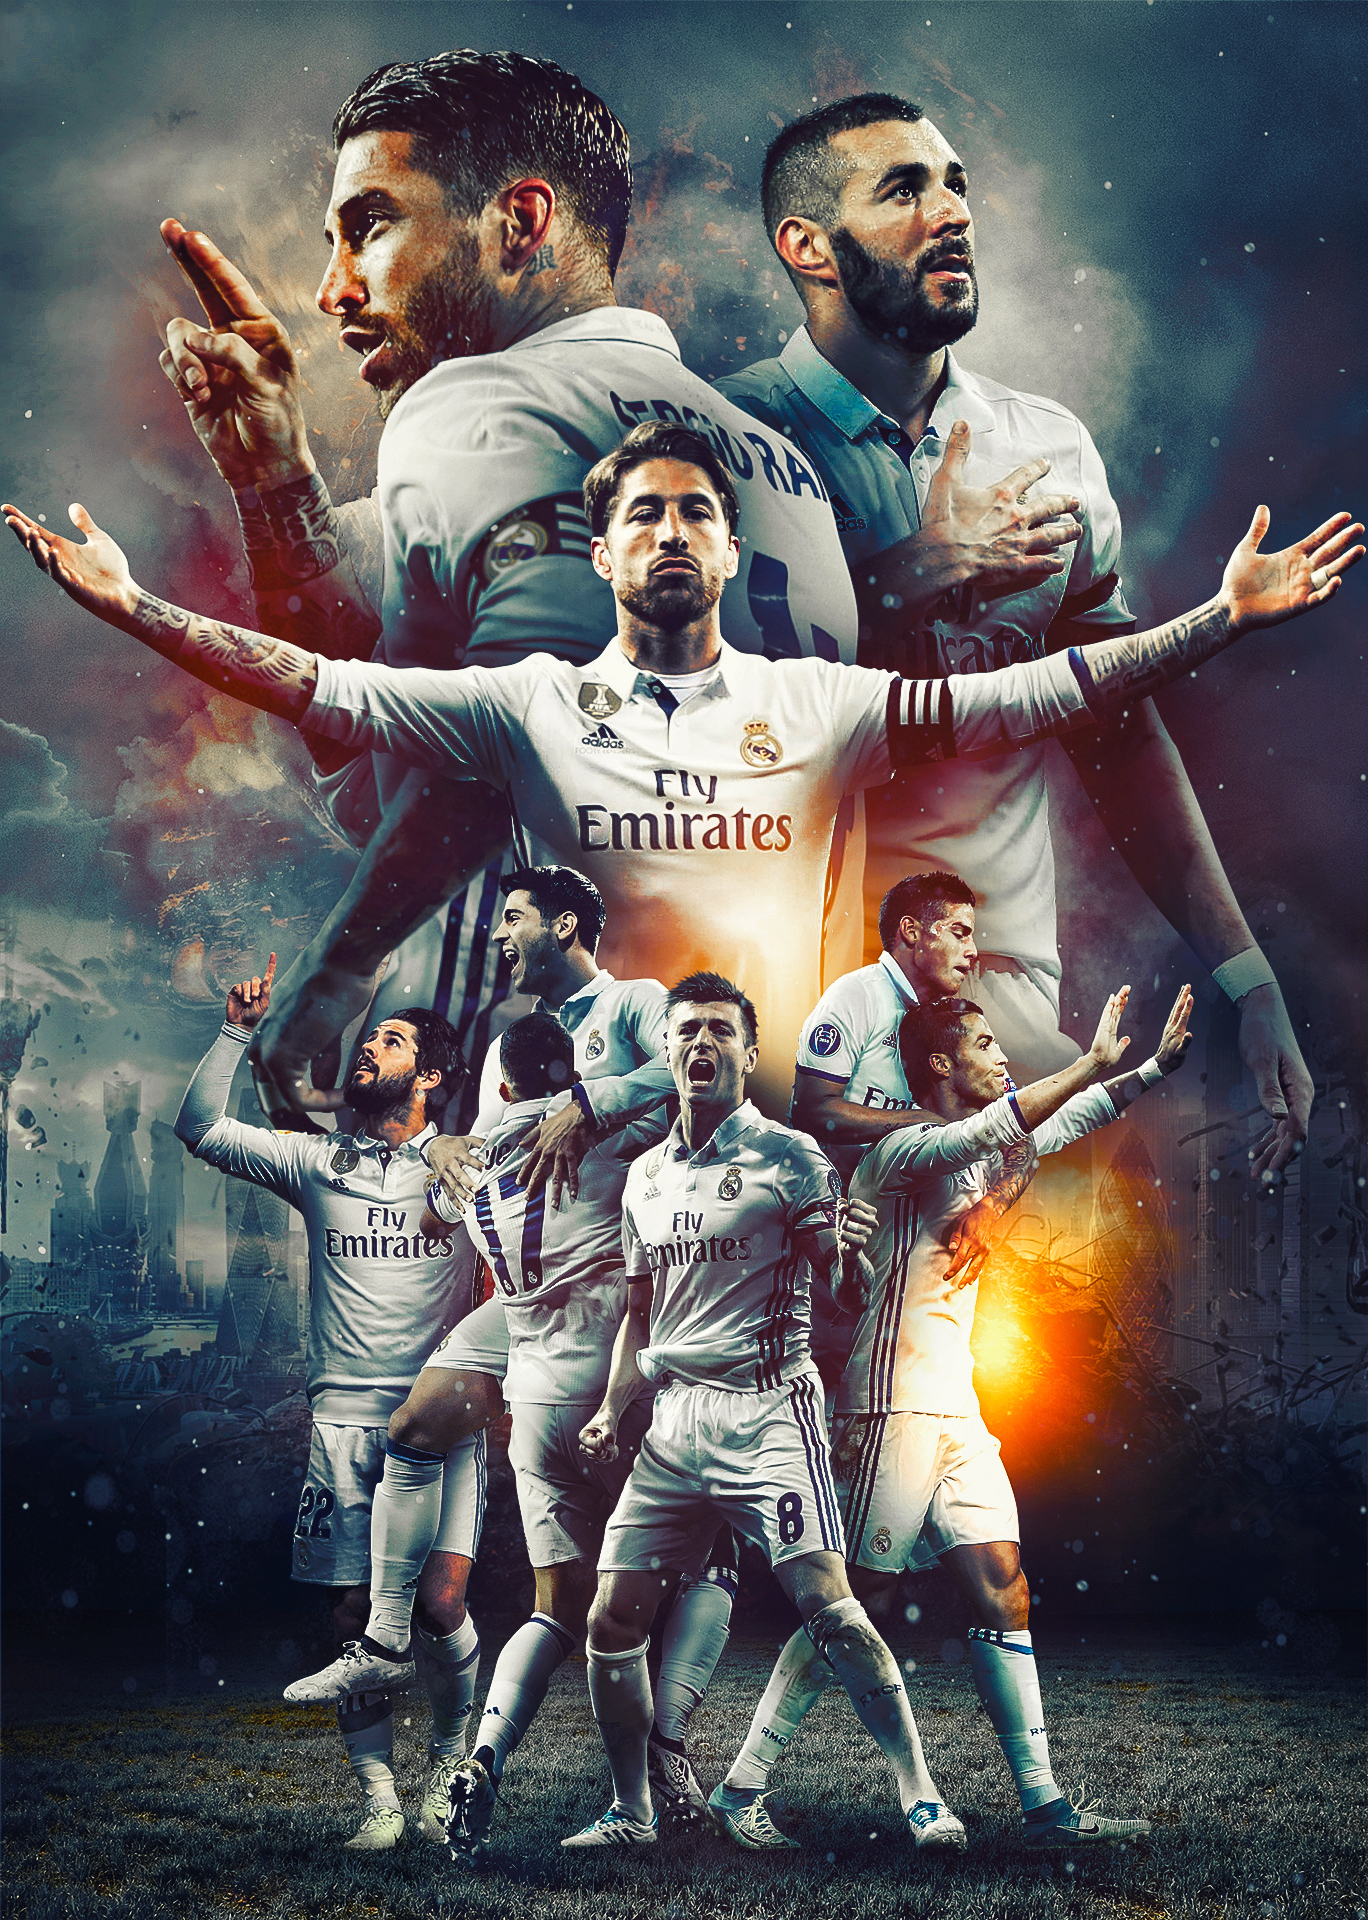 Real Madrid - HD Wallpaper by Kerimov23 on DeviantArt